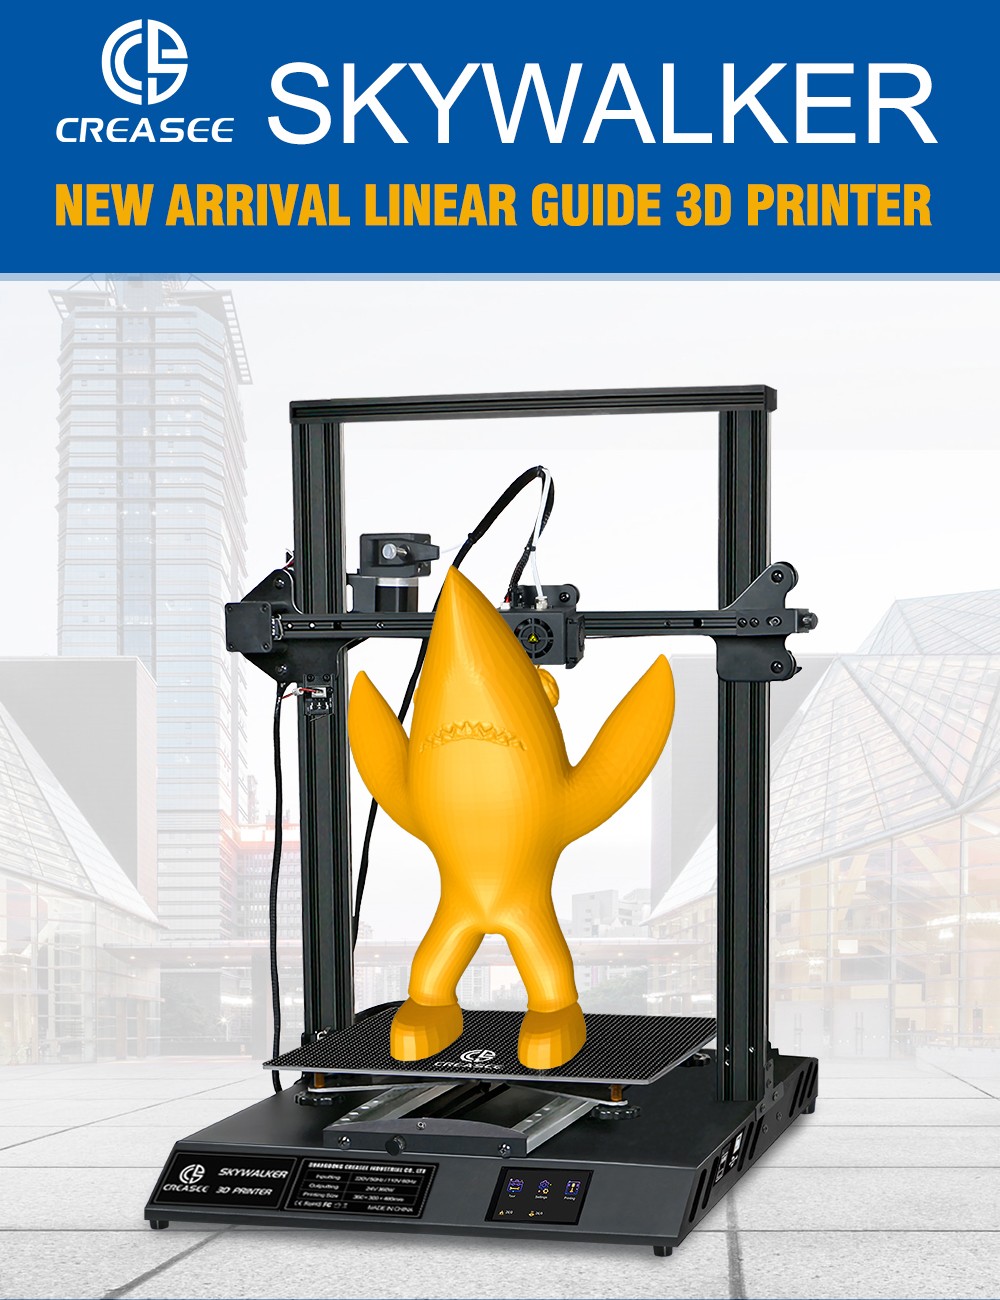 Imprimante 3D CREASEE SKYWALKER double piste haute précision grande éducation commerciale bricolage taille d'impression sur verre 300x300x400mm